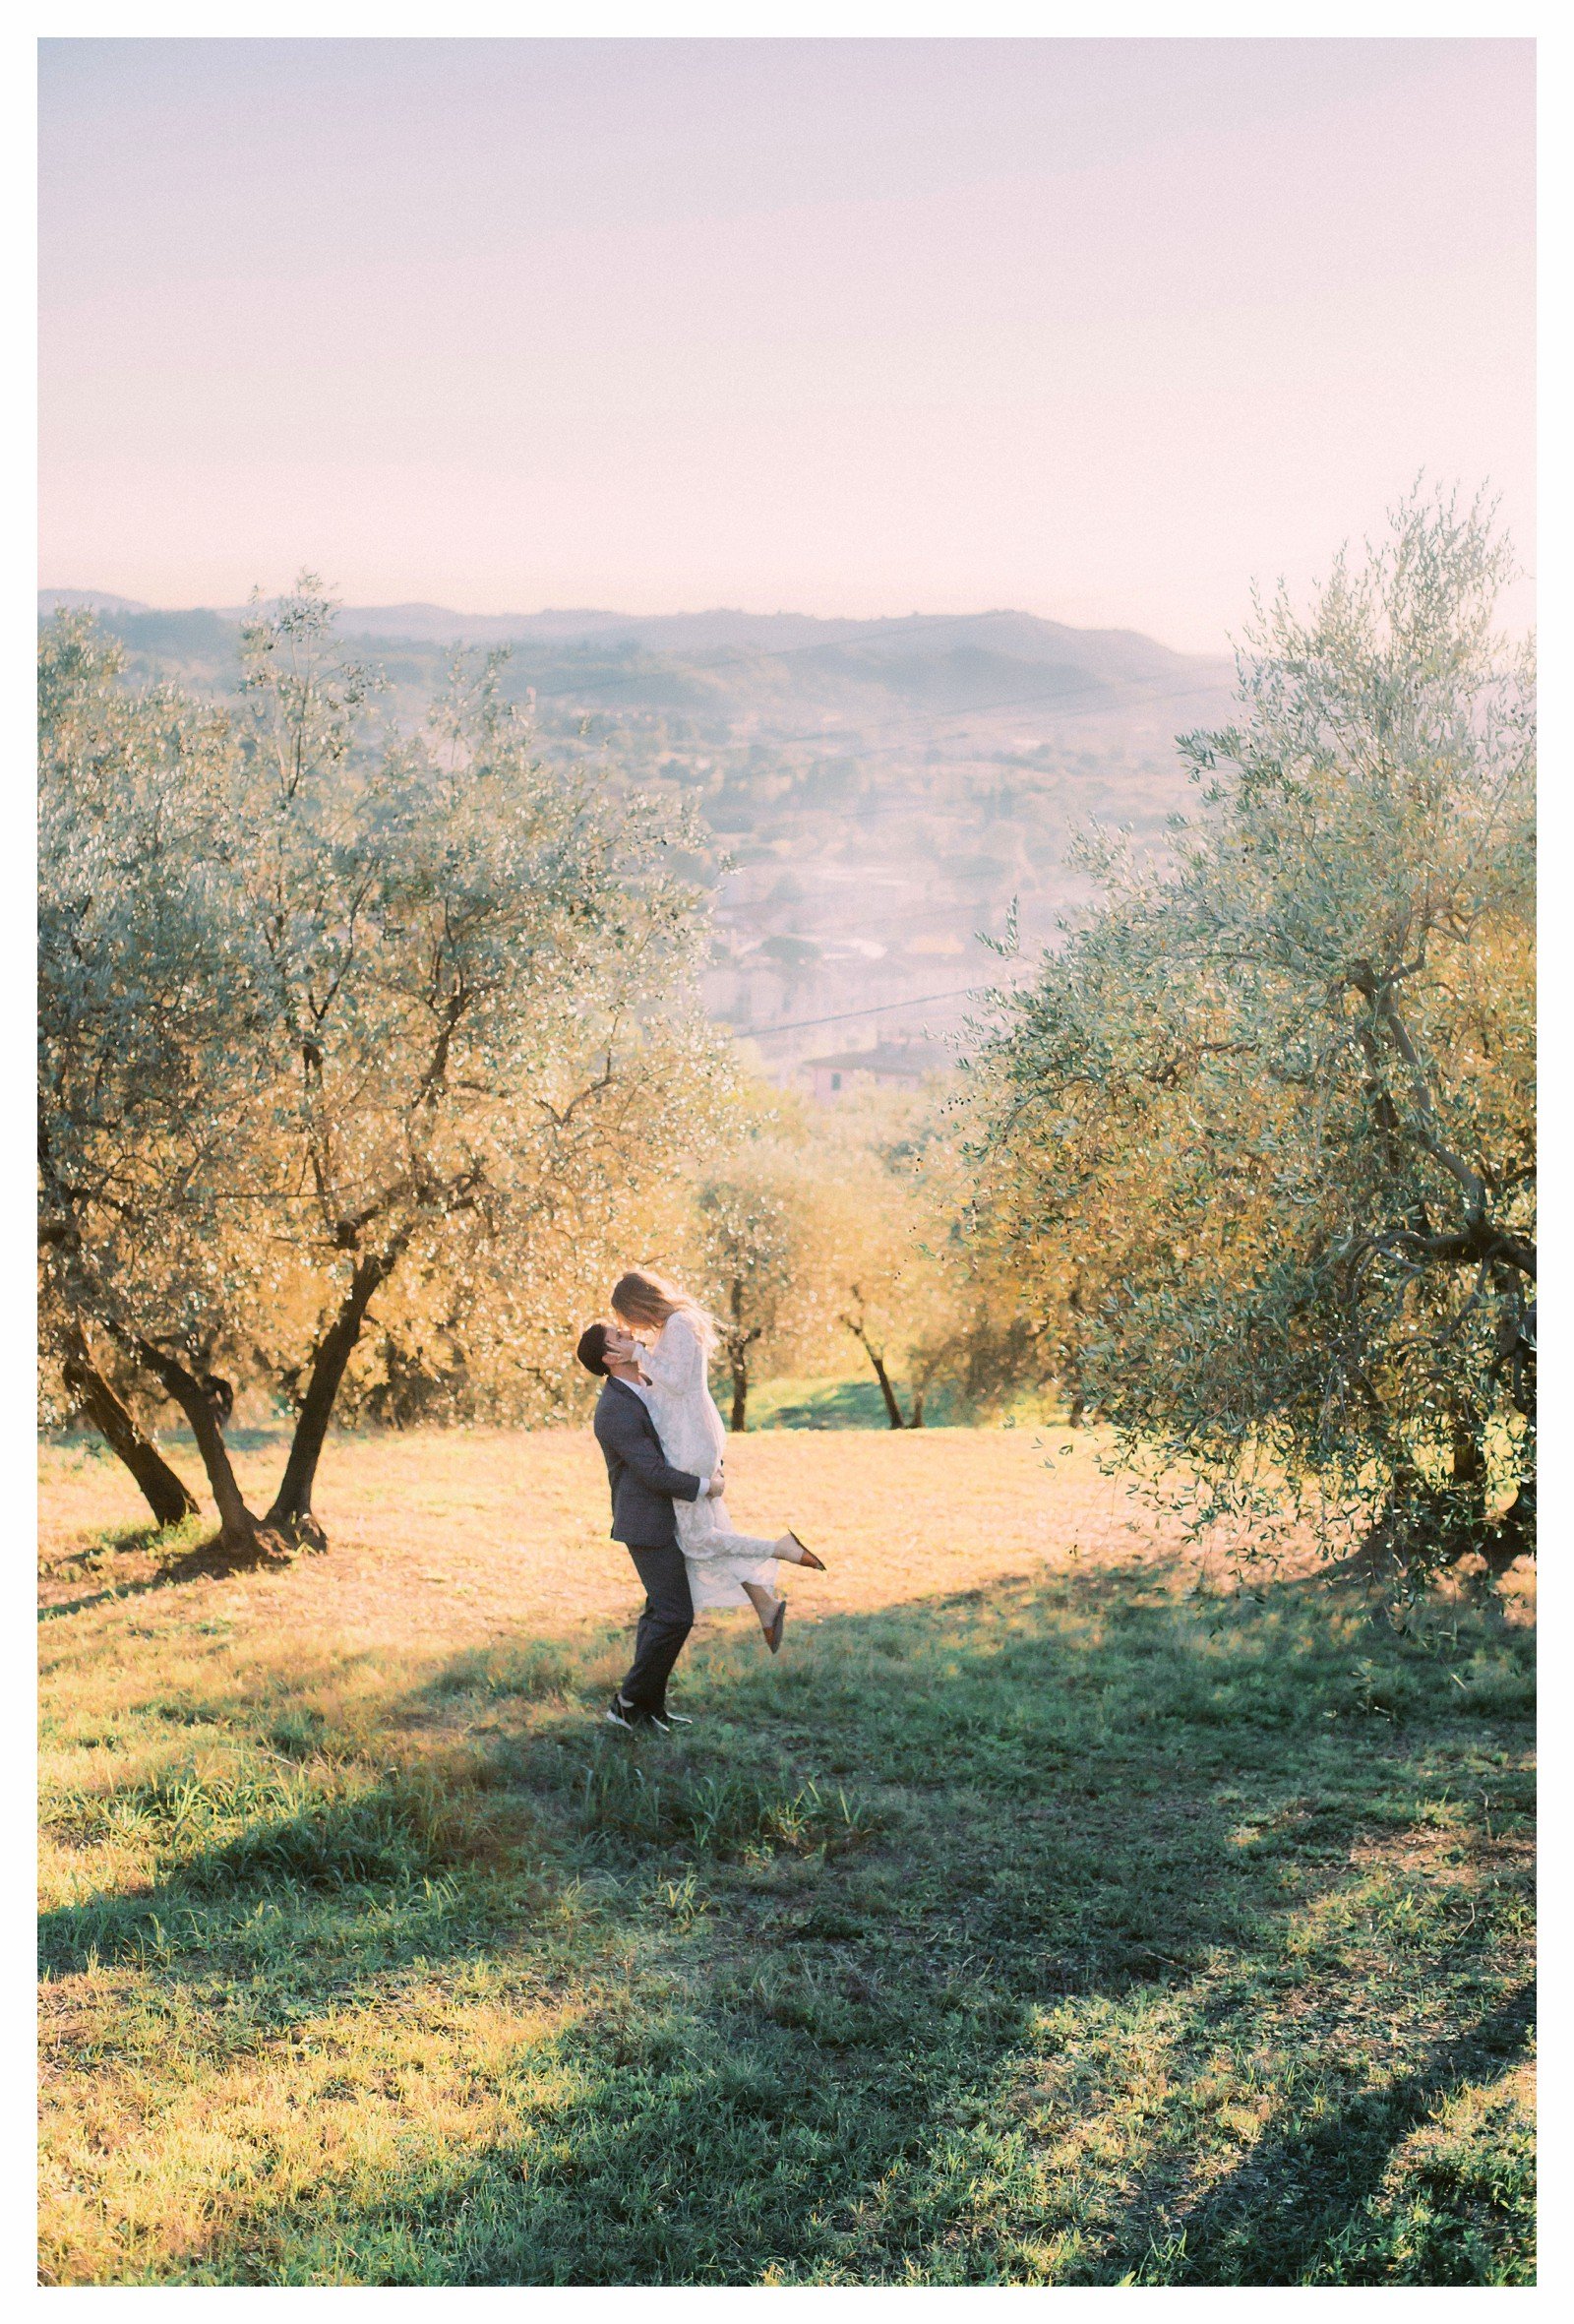 tuscany-countryside-val-dorcia-wedding-couple-photoshoot-photographer_0030.jpg